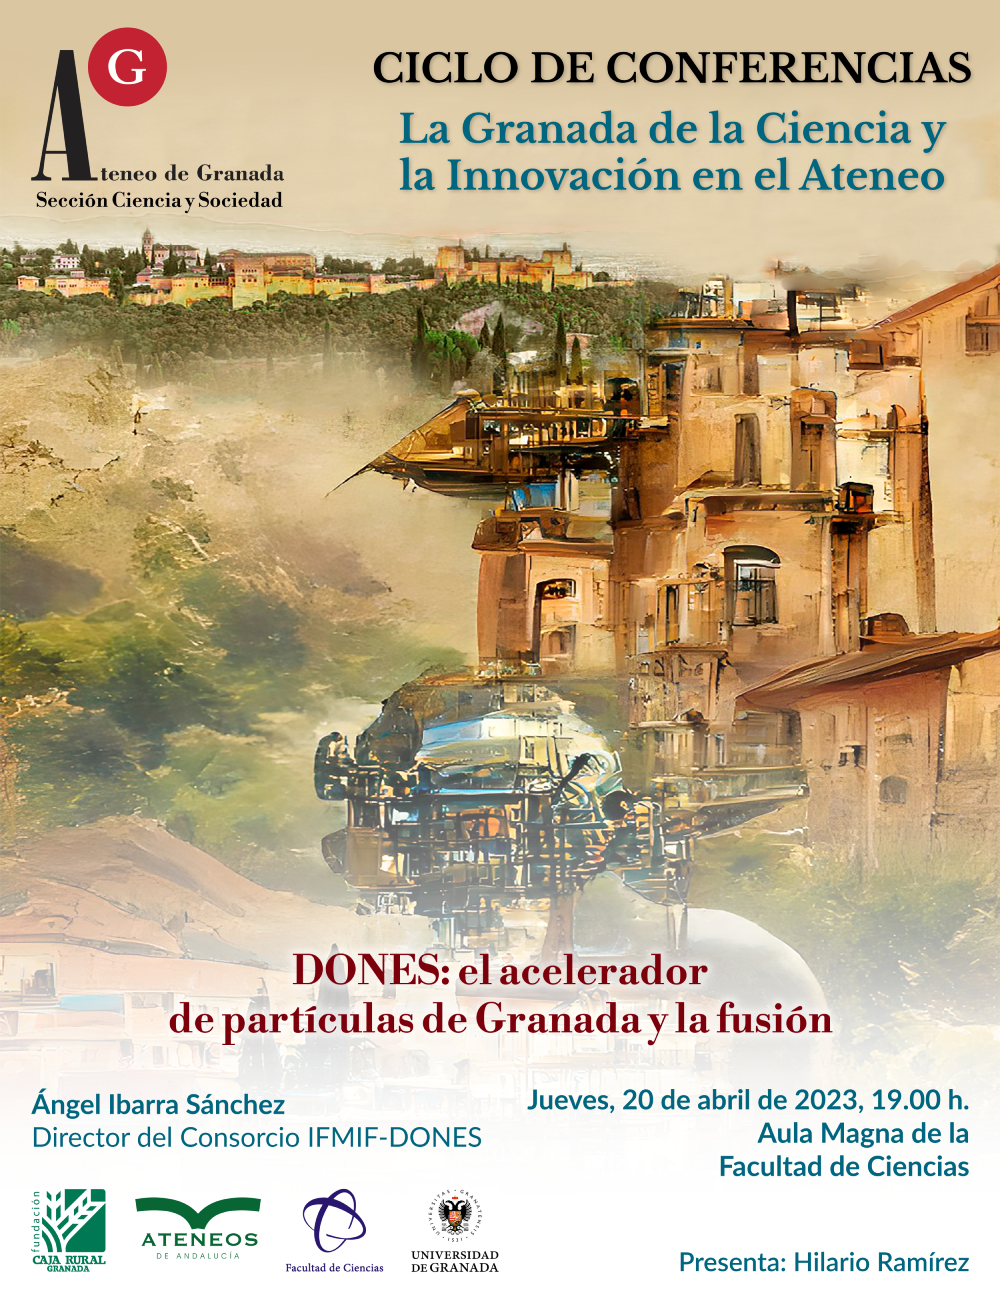 DONES: el acelerador de partículas de Granada